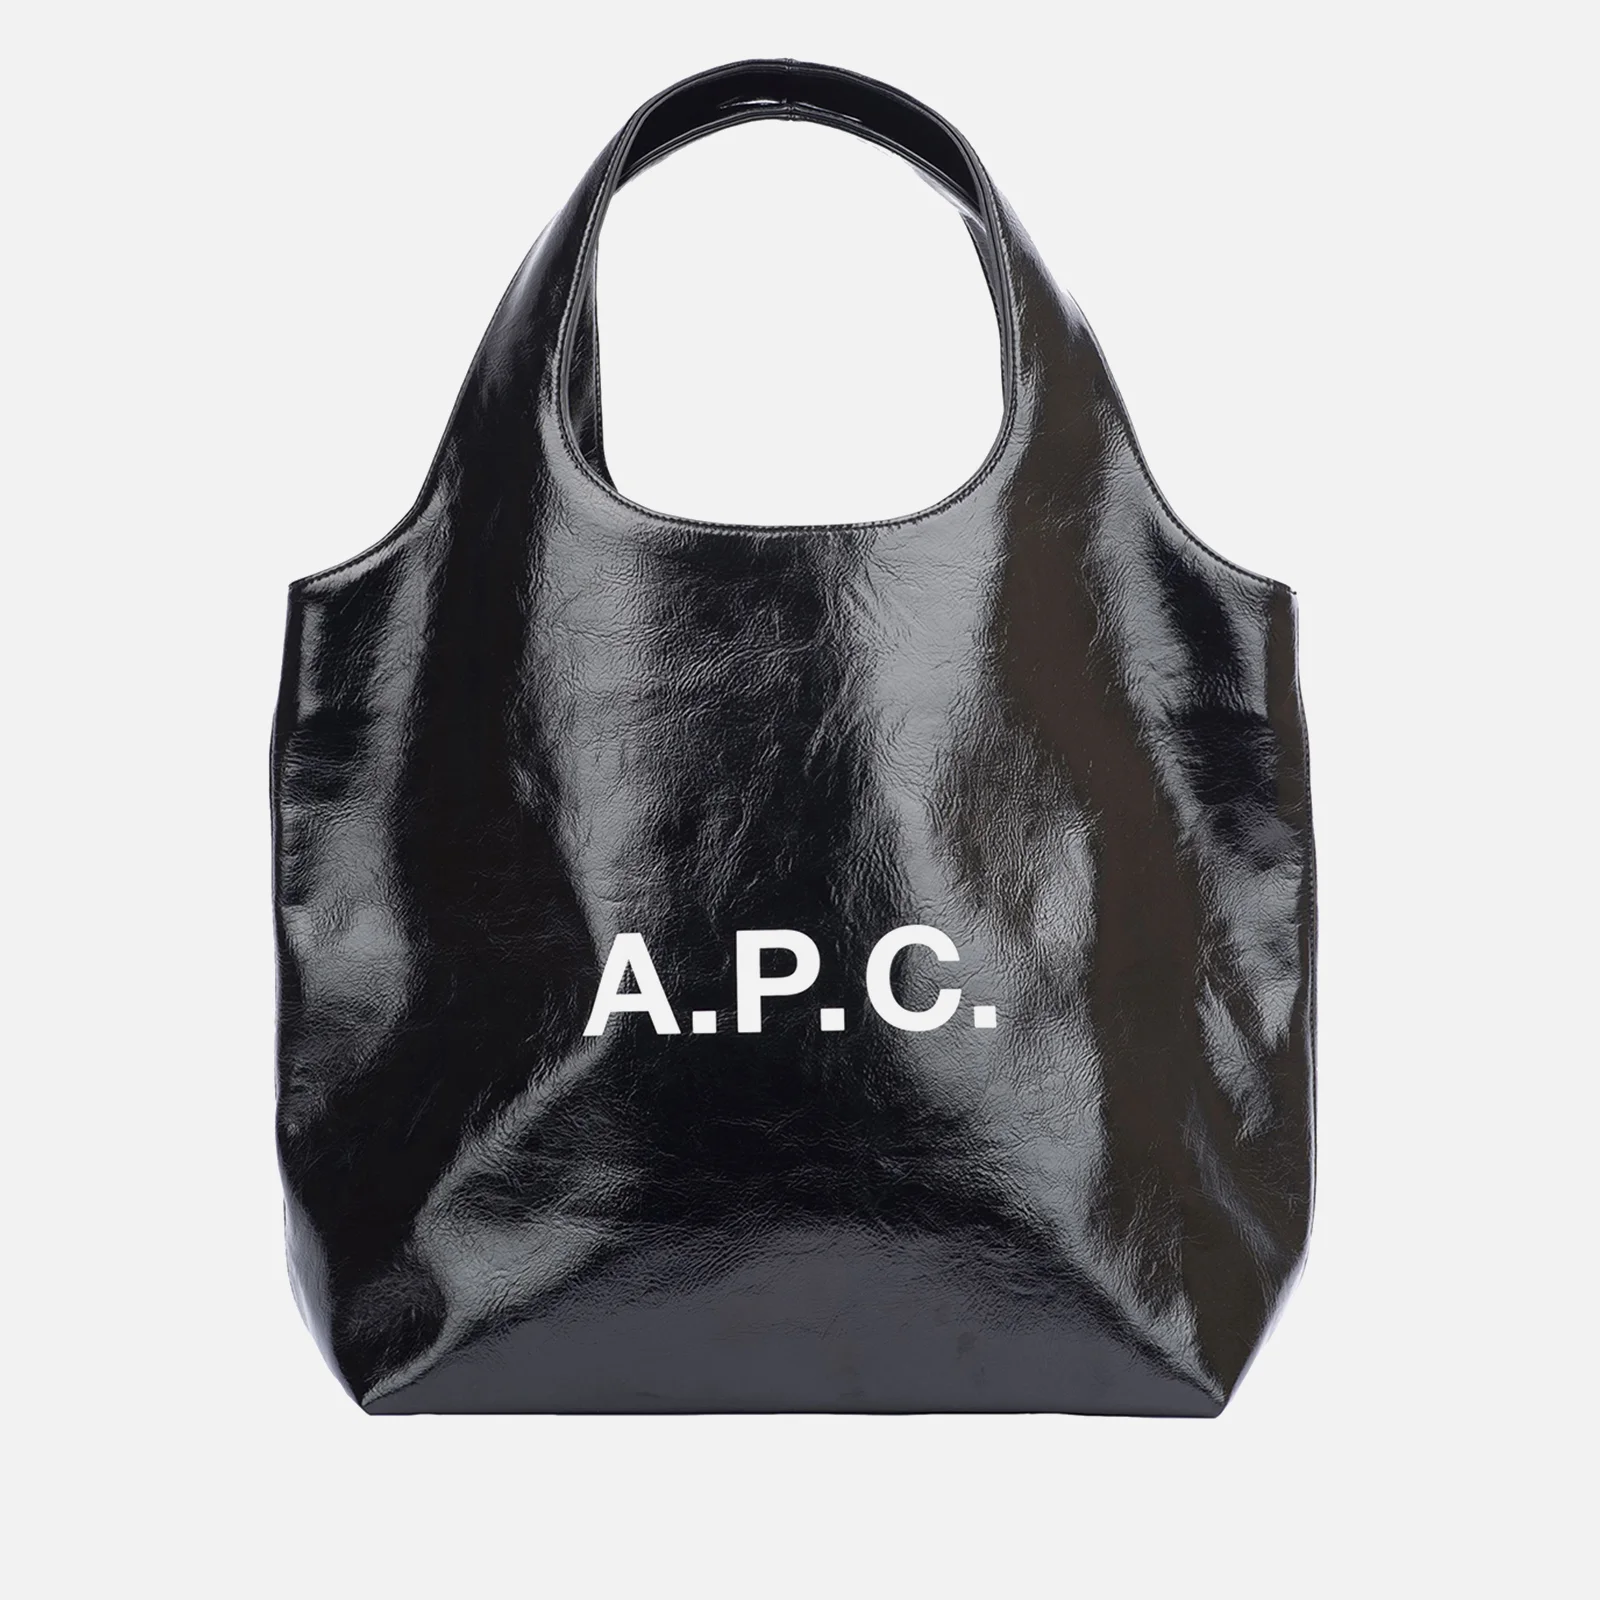 A.P.C Ninon Faux Leather Tote Bag Image 1